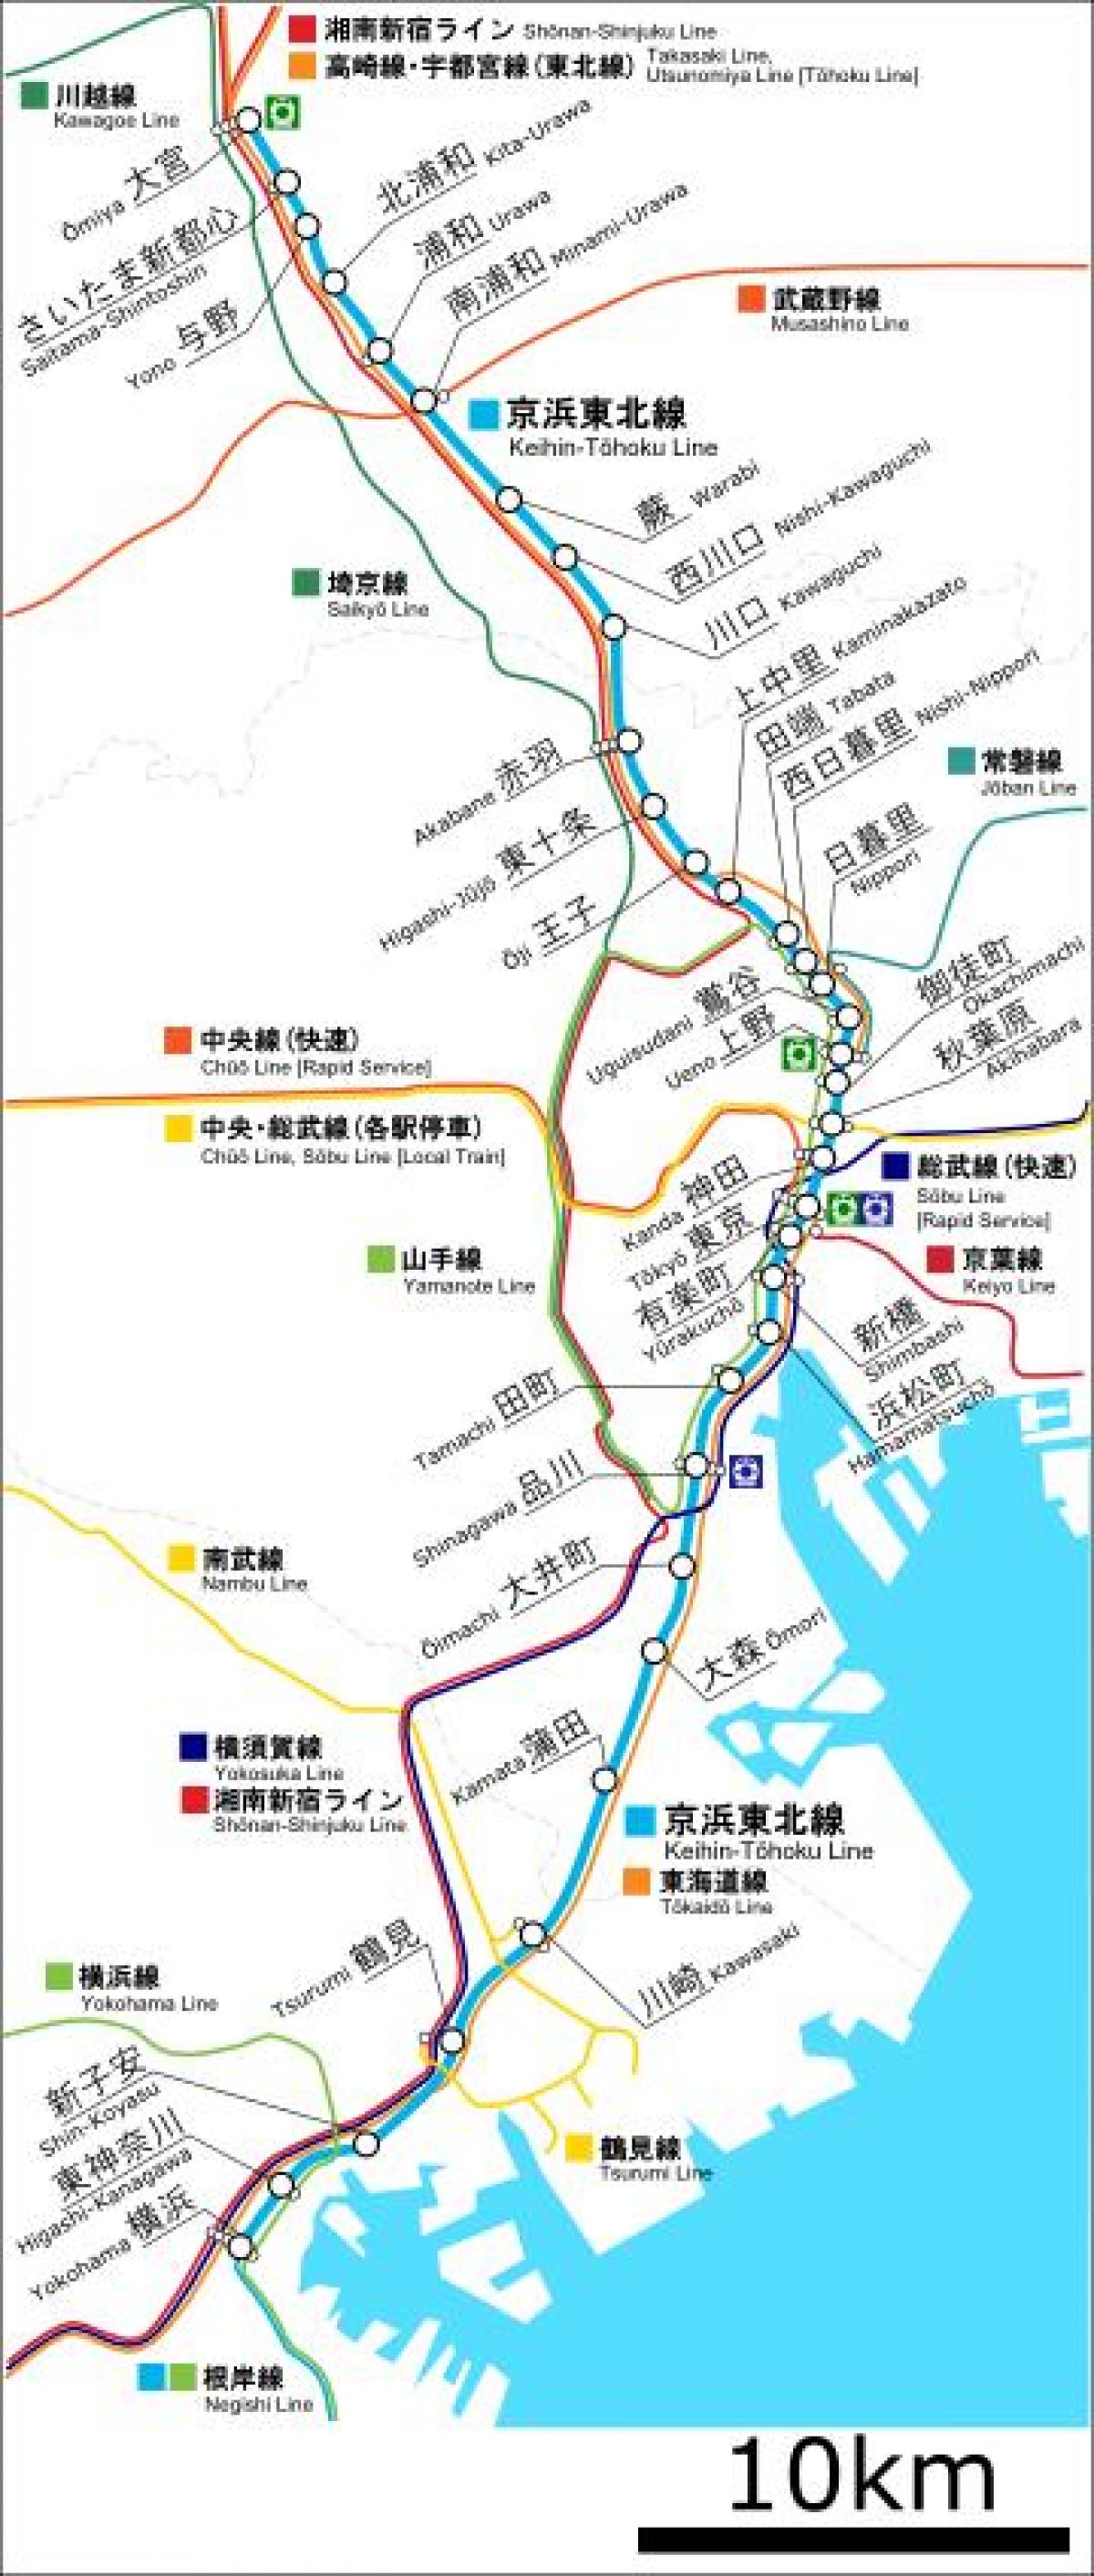 mappa di Keihin tohoku line